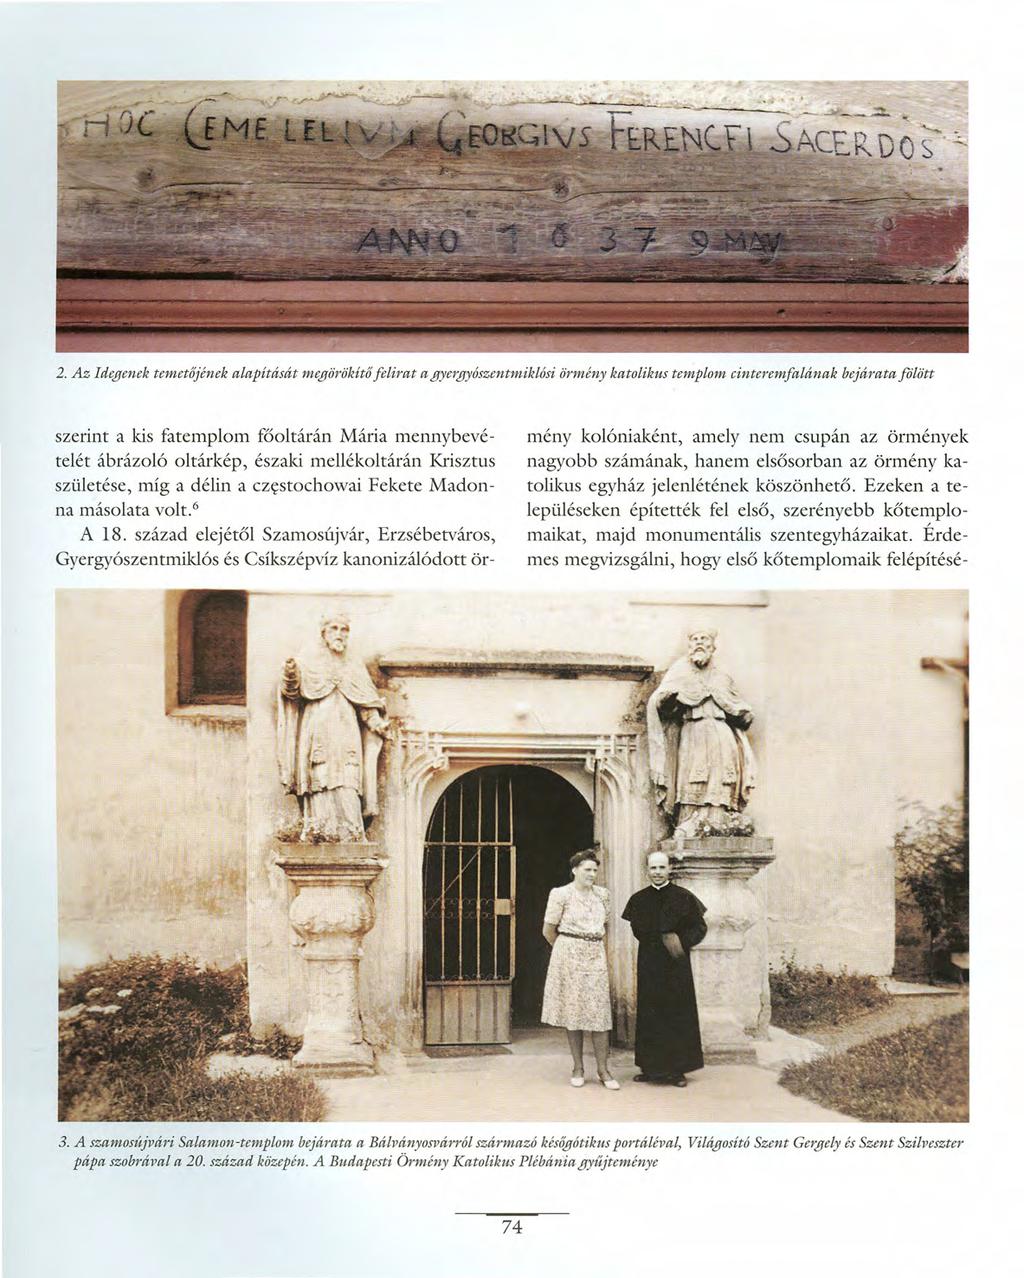 2. Az Idegenek temetőjének alapítását megörökítő felirat a gyergyószentmiklósi örmény katolikus templom cinteremfalának bejárata fllött szerint a kis fatemplom főoltárán Mária mennybevételét ábrázoló